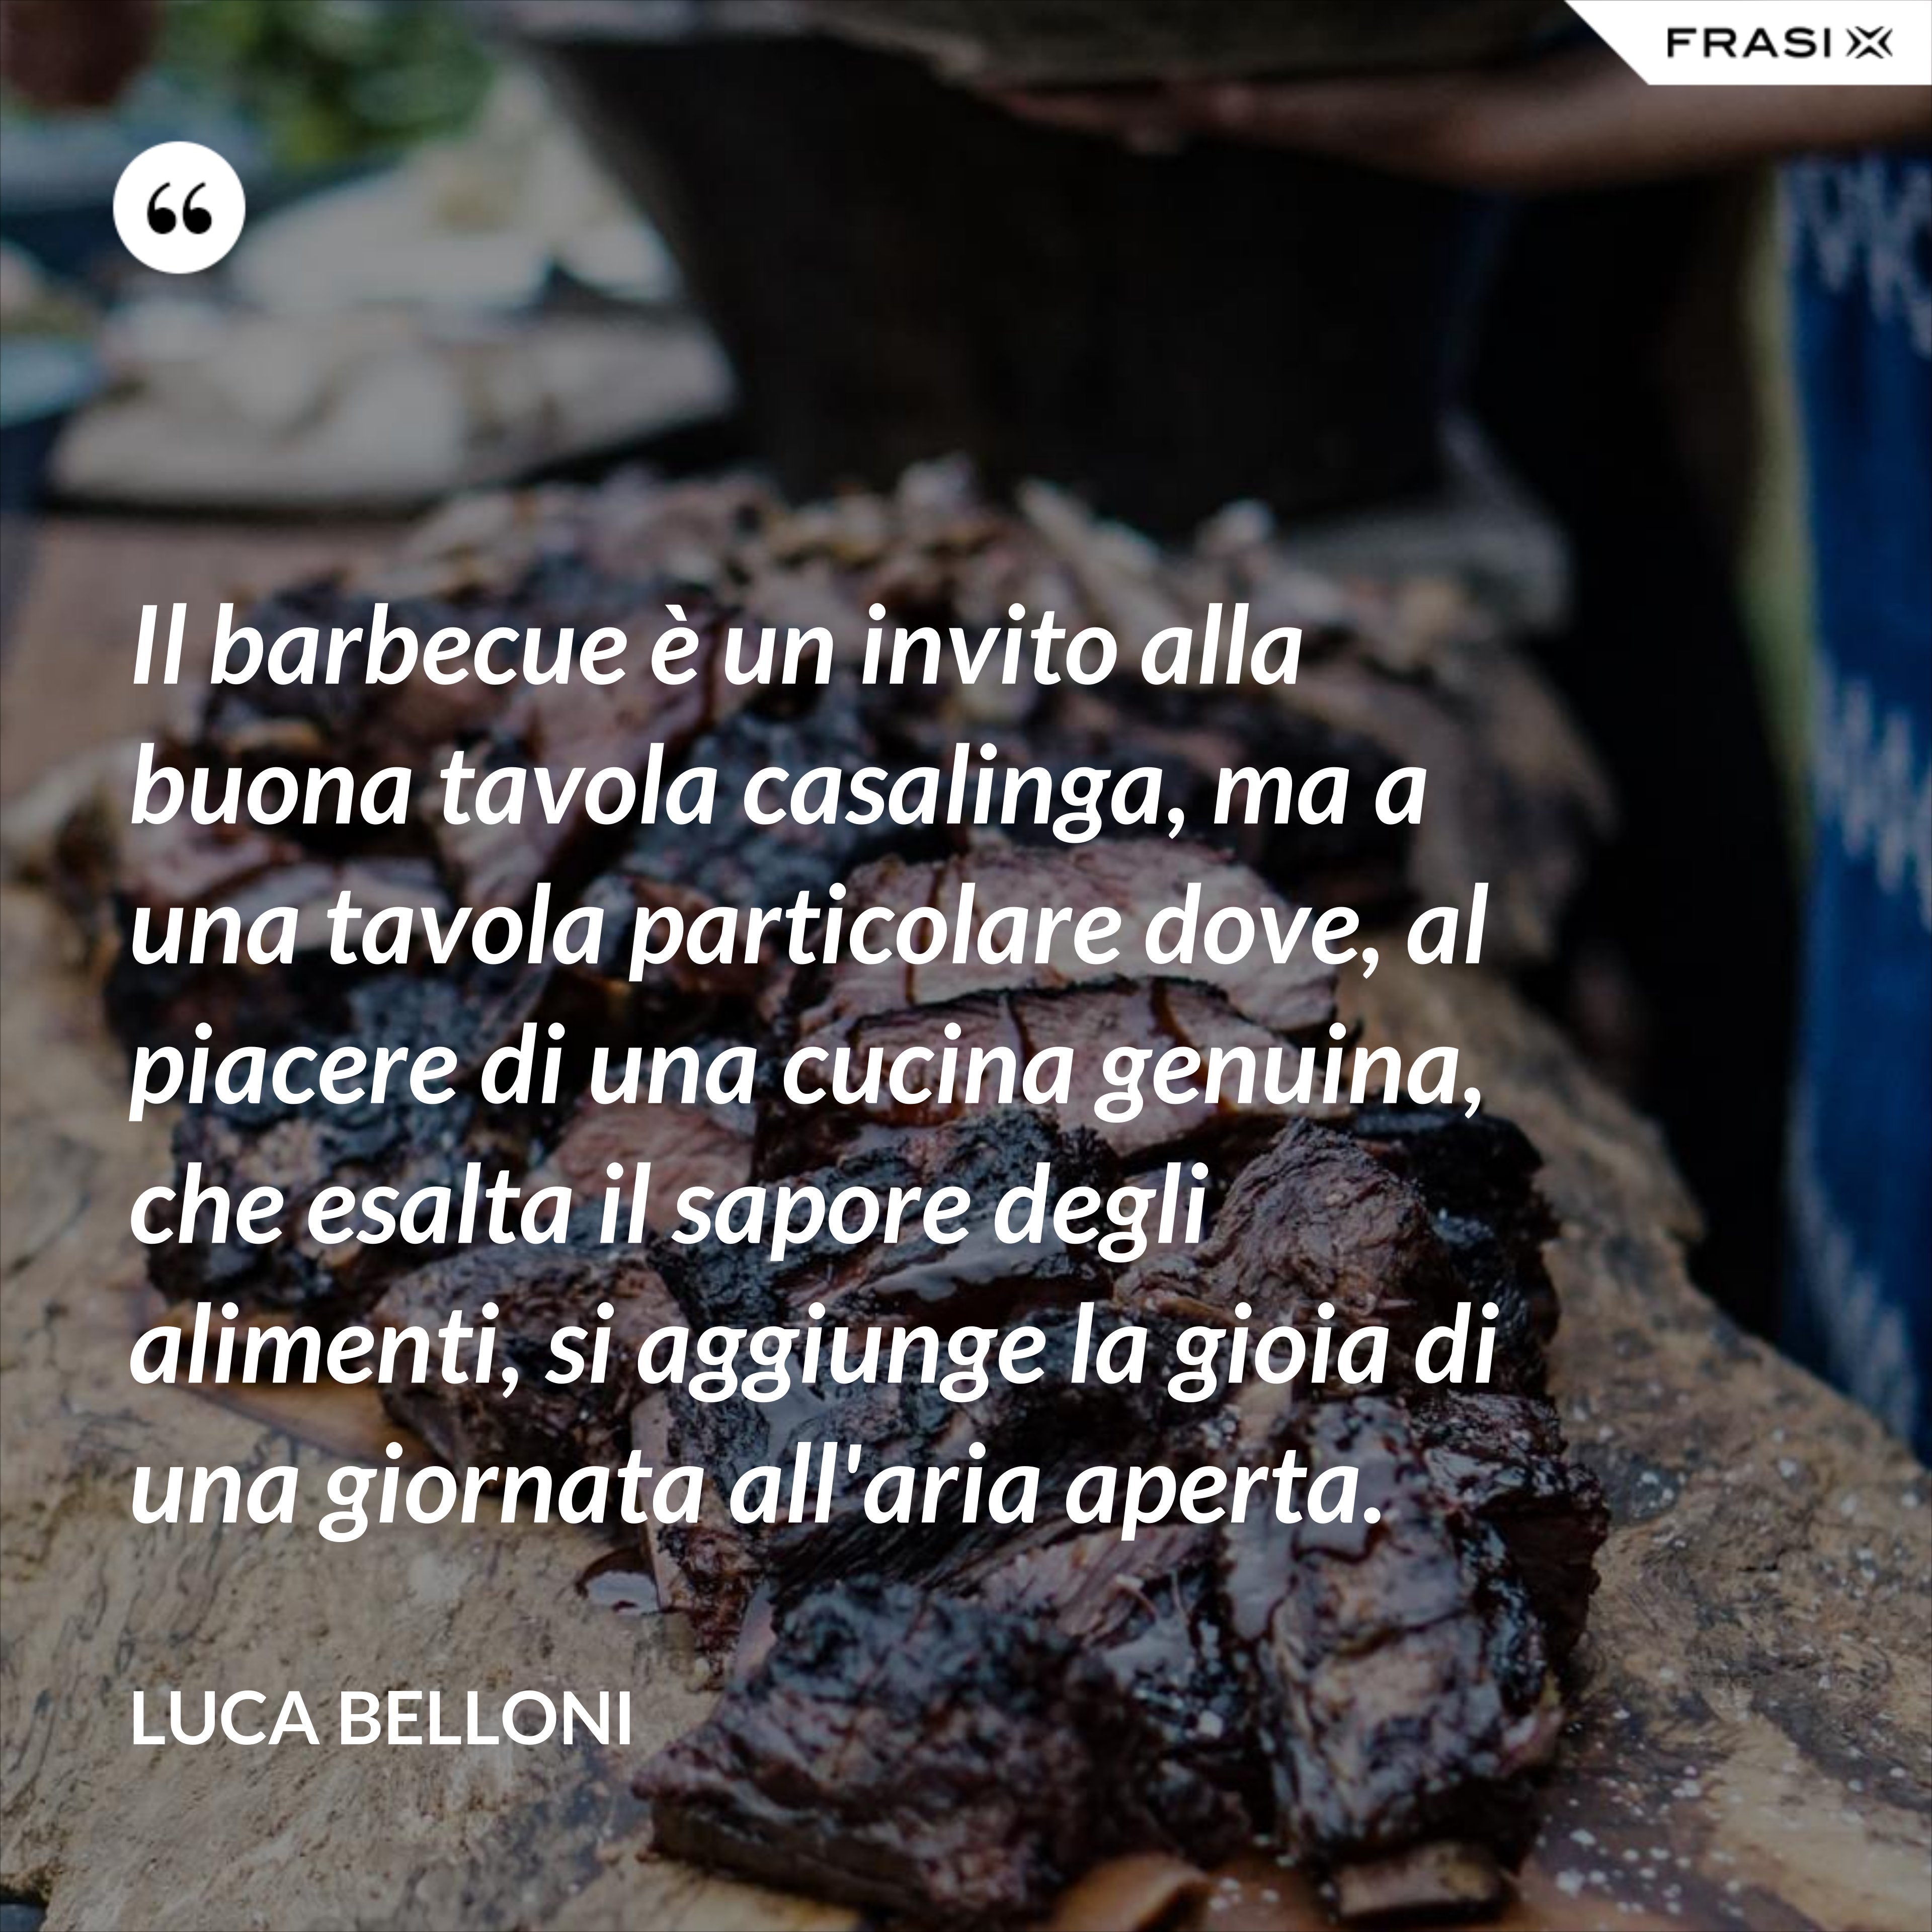 Il barbecue è un invito alla buona tavola casalinga, ma a una tavola particolare dove, al piacere di una cucina genuina, che esalta il sapore degli alimenti, si aggiunge la gioia di una giornata all'aria aperta. - Luca Belloni